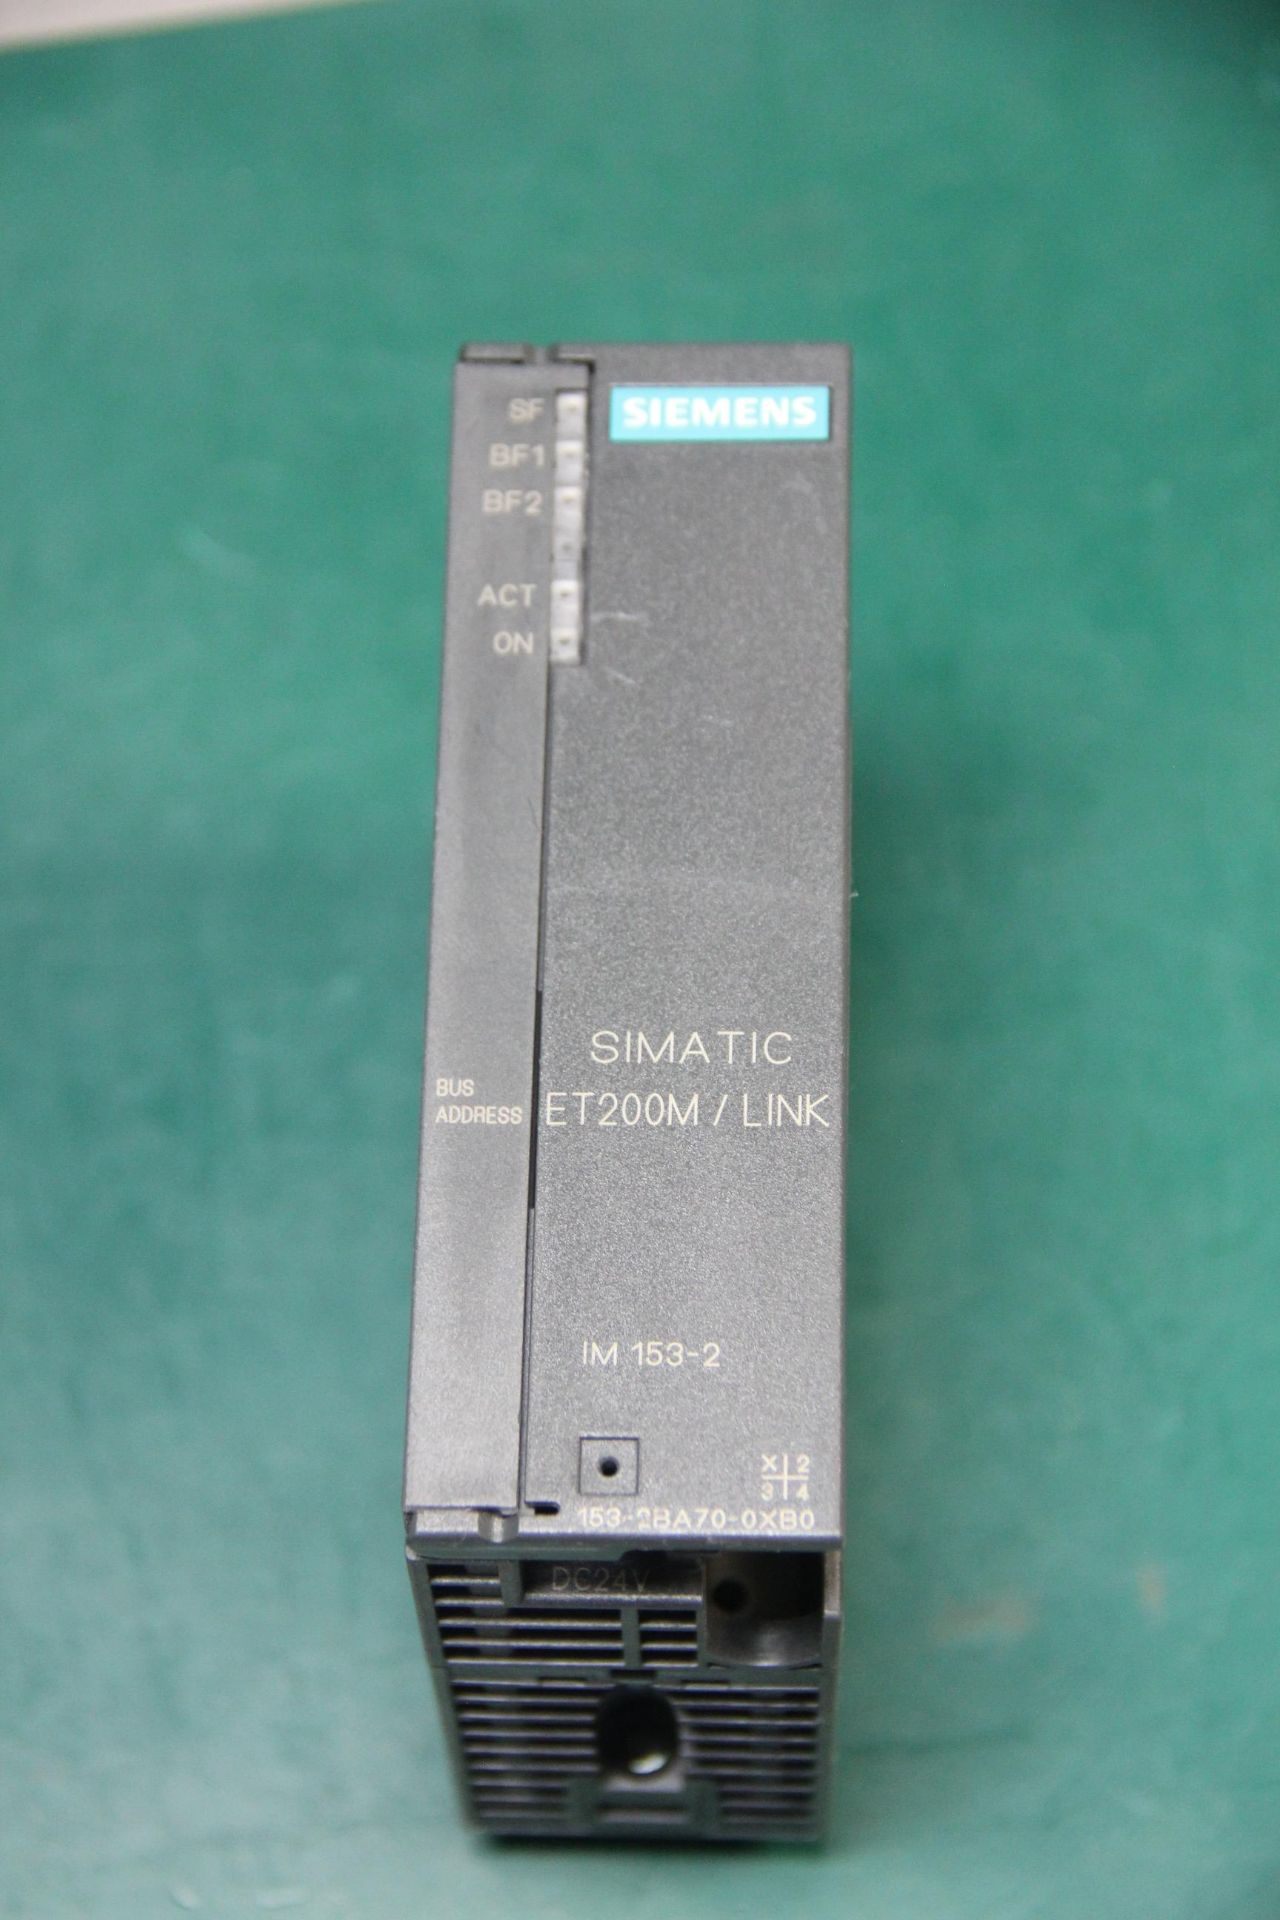 SIEMENS SIMATIC S7 ET200M/LINK PLC MODULE - Image 3 of 5